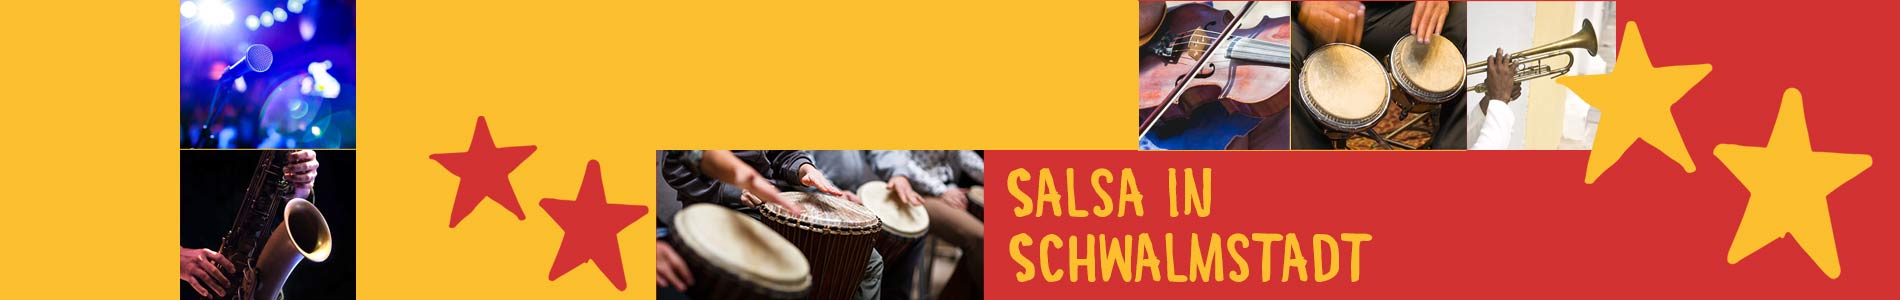 Salsa in Schwalmstadt – Salsa lernen und tanzen, Tanzkurse, Partys, Veranstaltungen